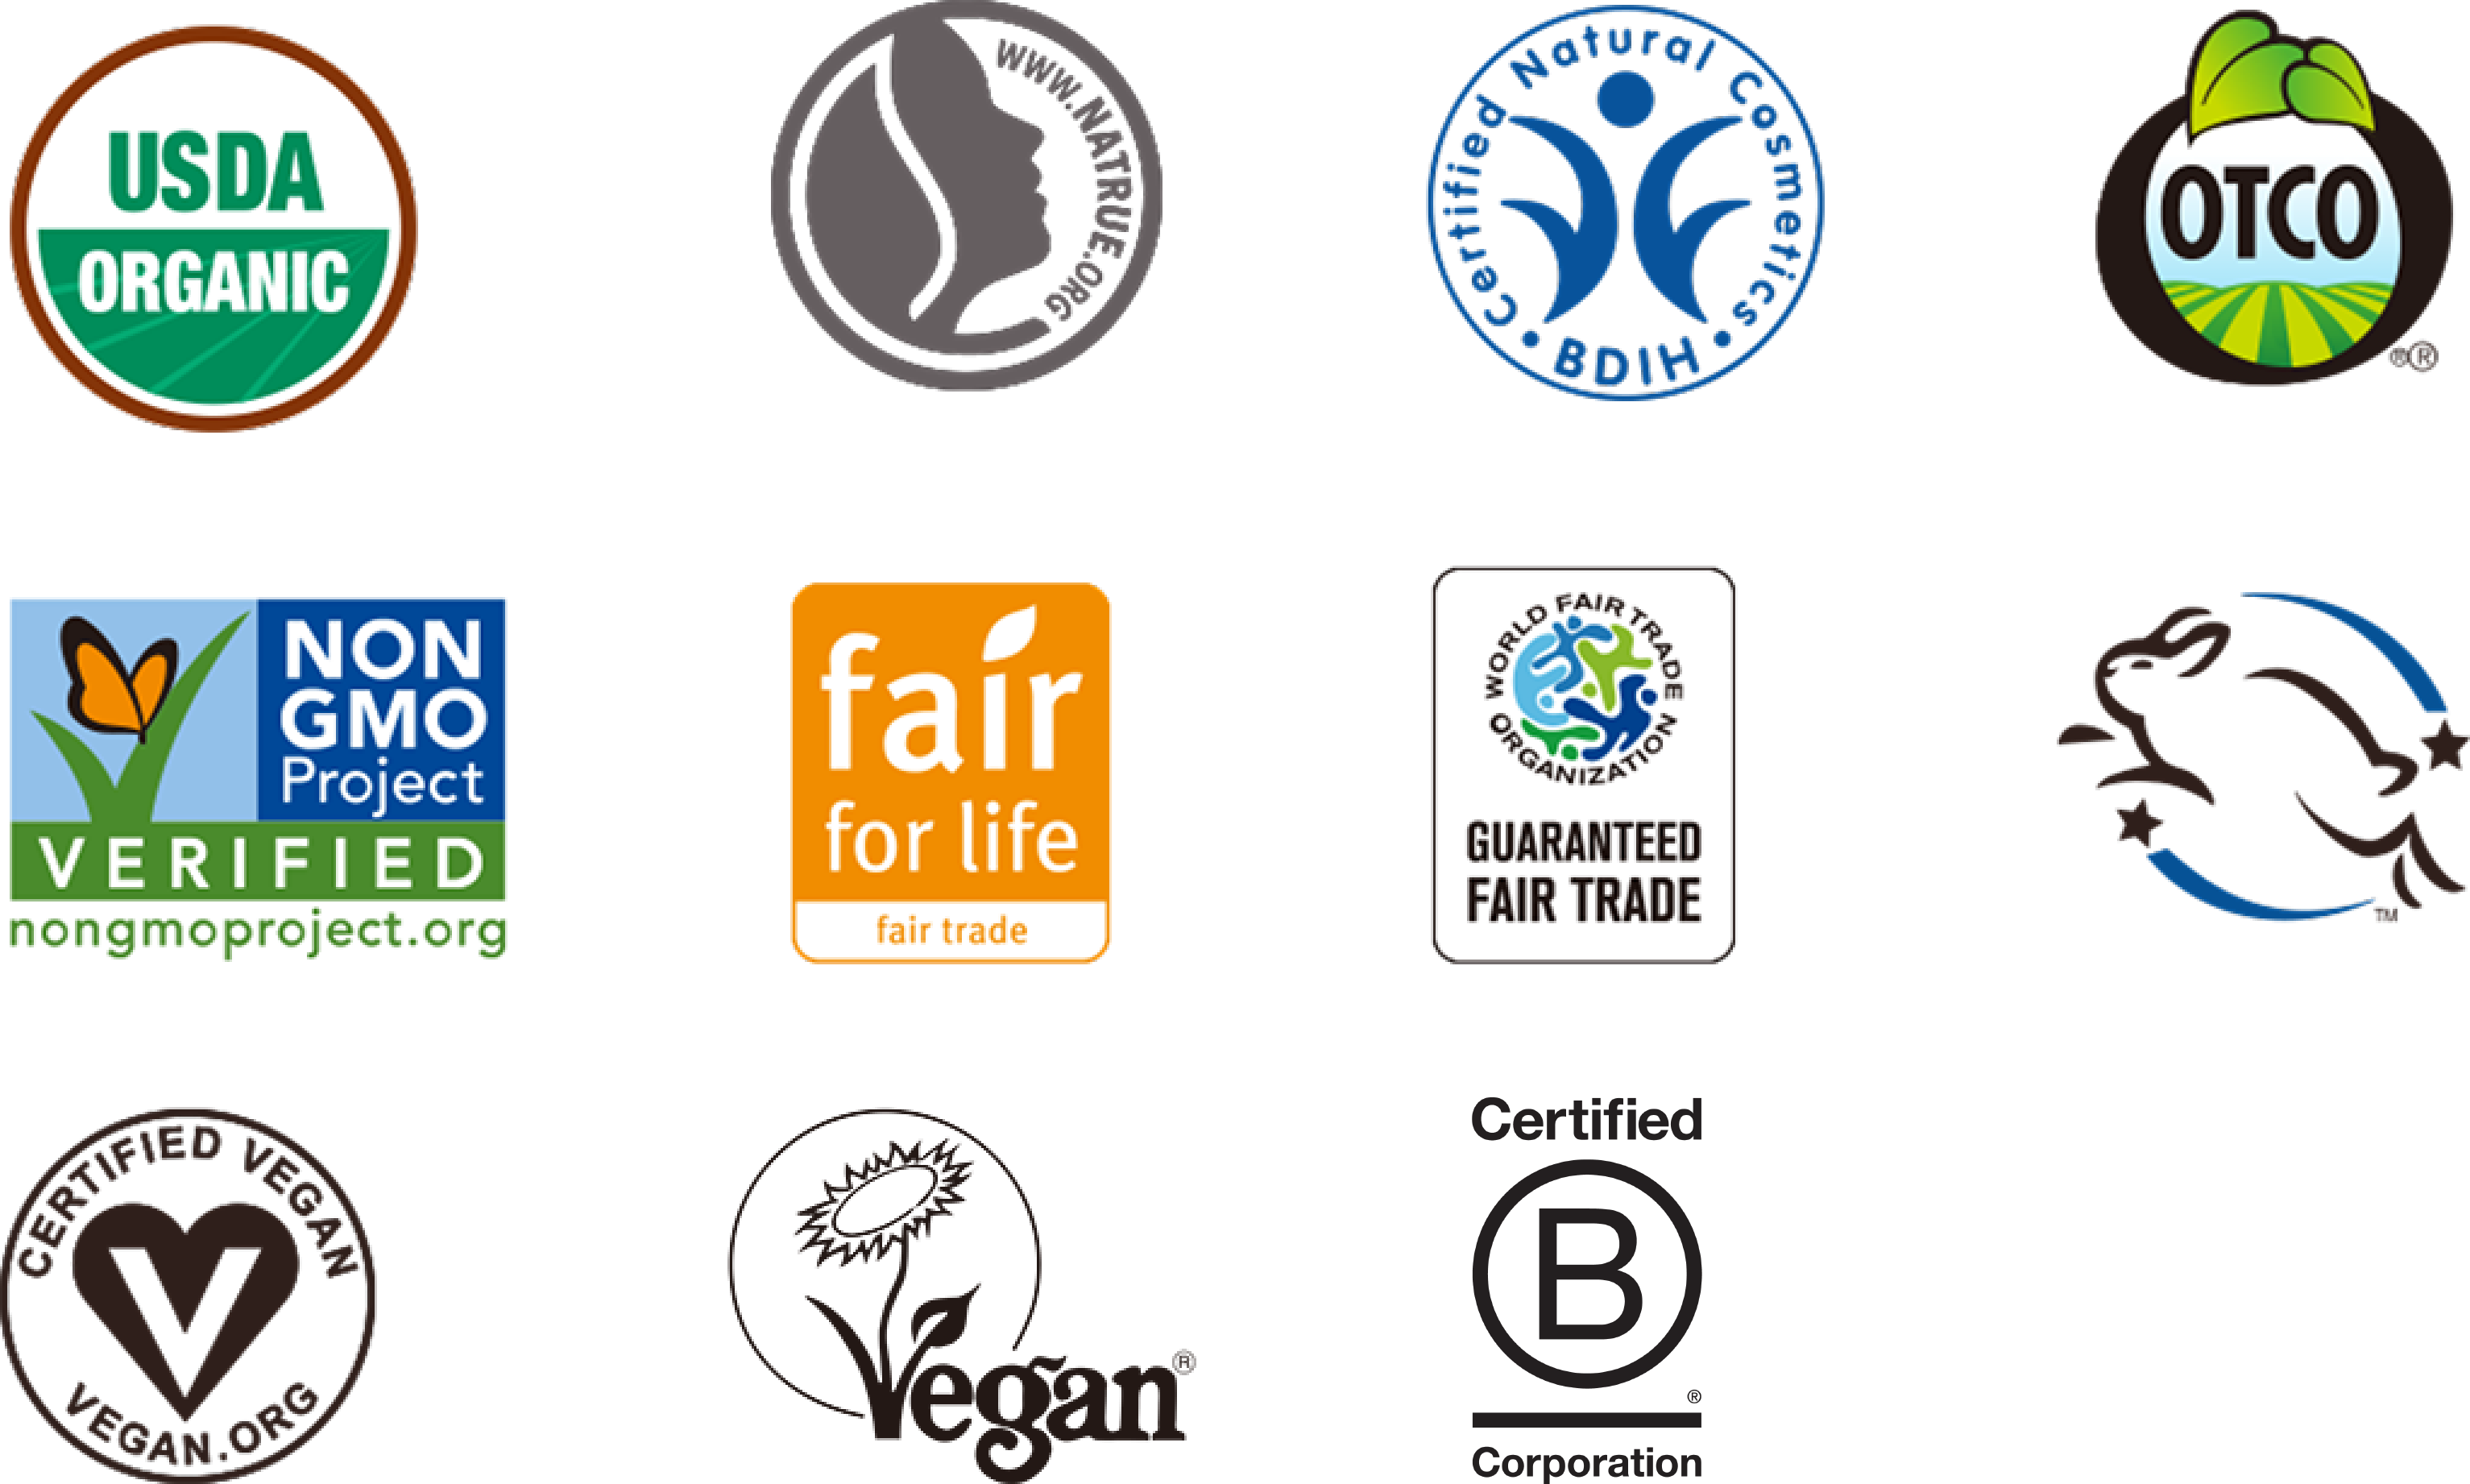 ドクターブロナーオーガニックシュガーソープが取得している認証マーク。USDA、NATRUE1、BDIH、Oregon Tilth Certified Organic、Non-GMO Project、fair for life、WFTO、Leaping Bunny、Vegan Action